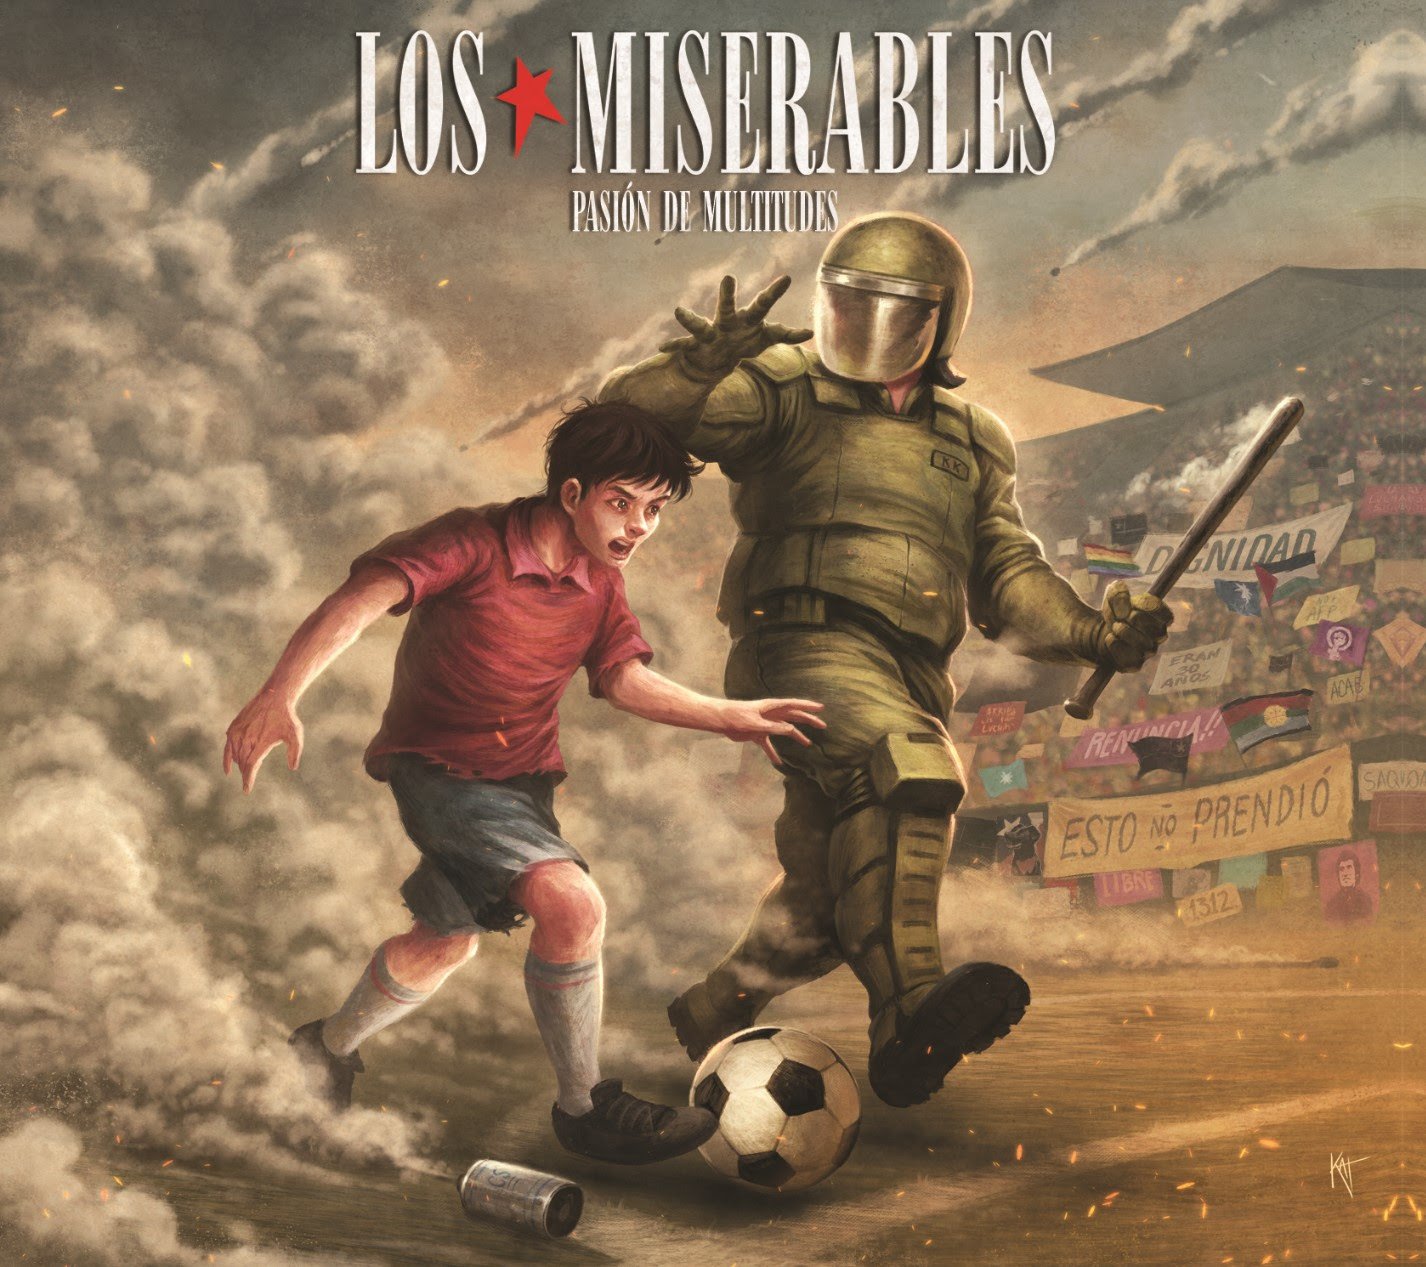 Los Miserables estrenan su disco «Pasión de multitudes» en vinilo